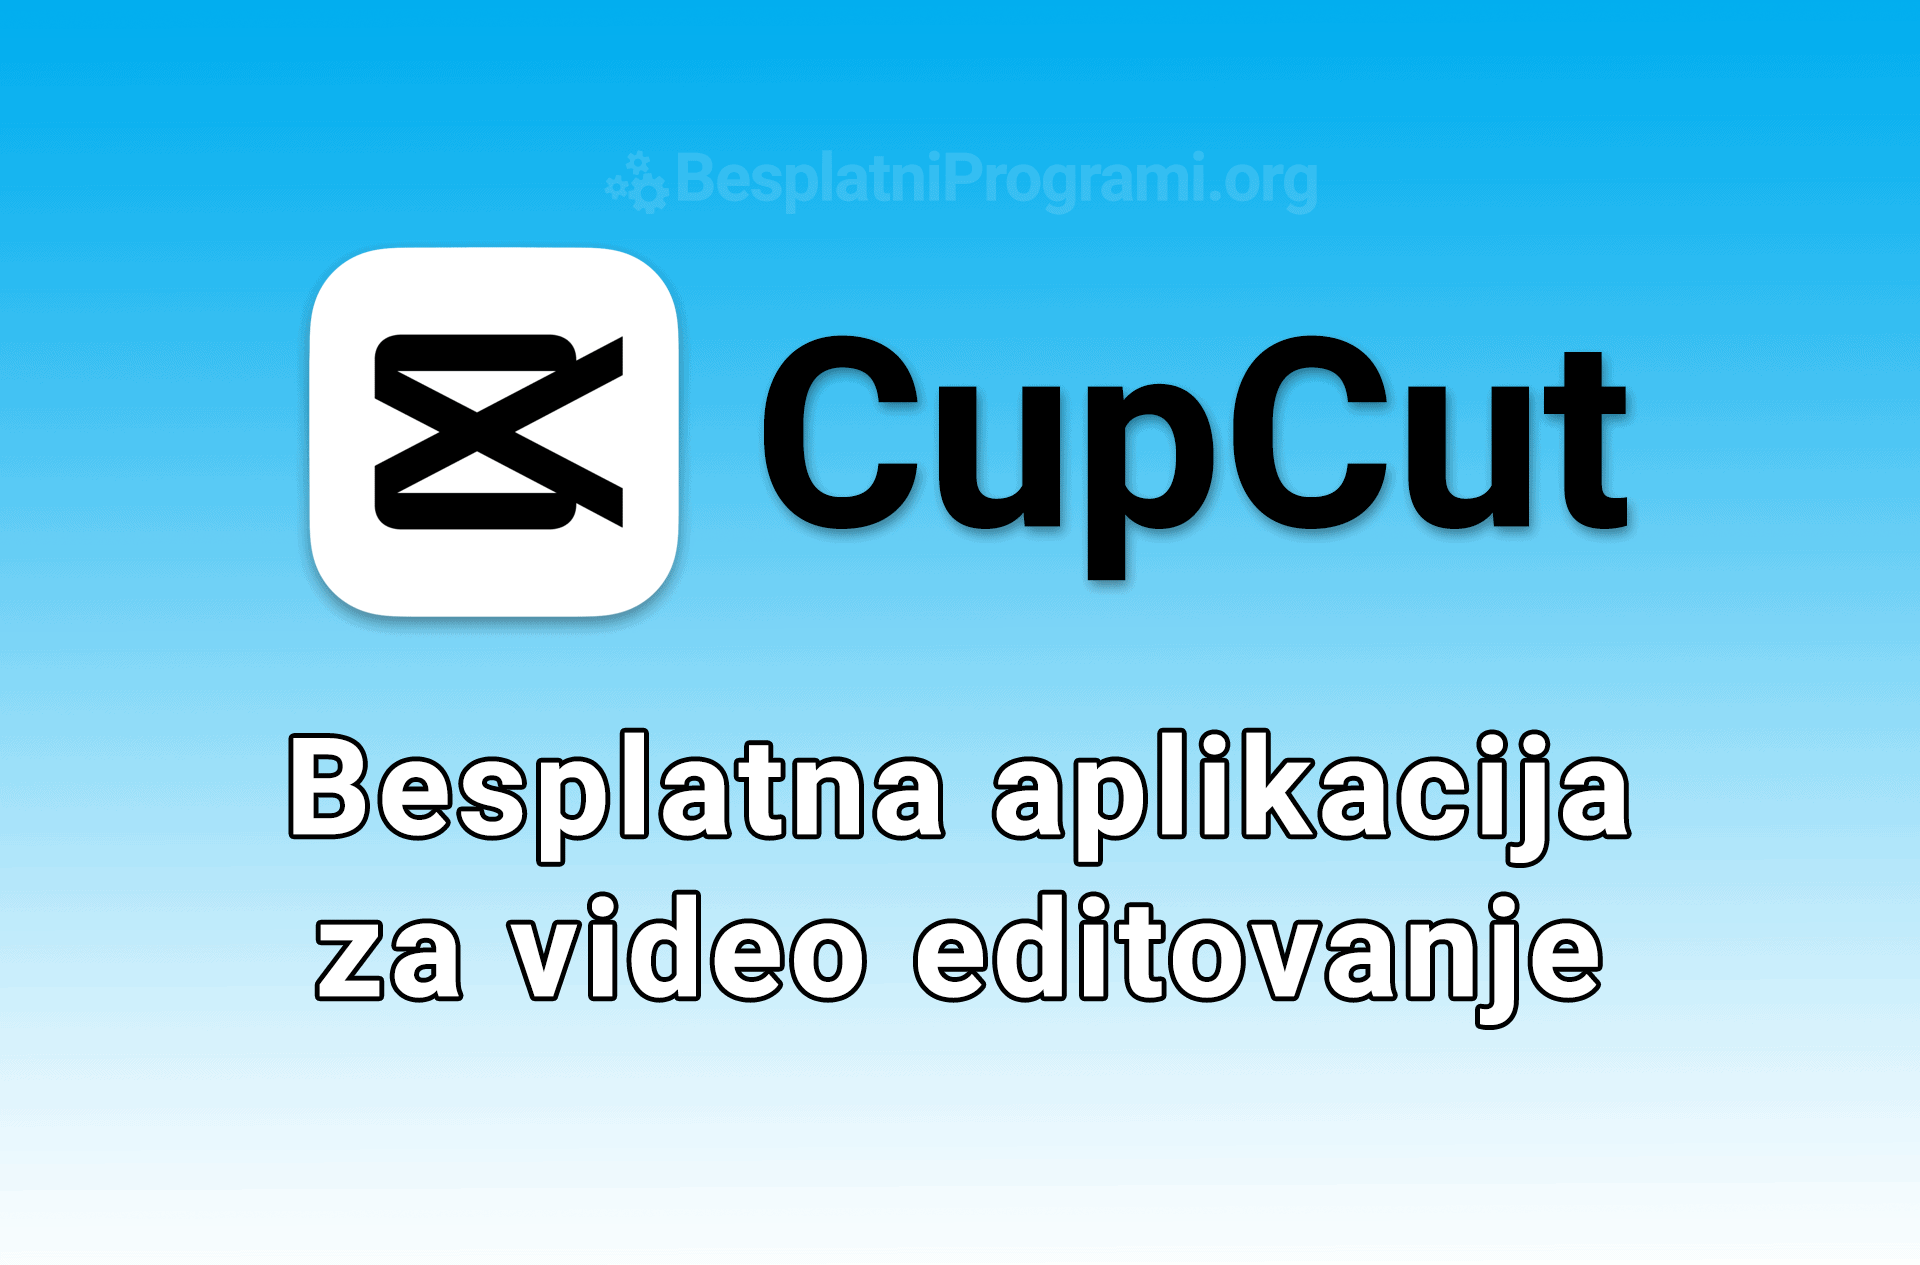 CapCut – Video editovanje na mobilnim uređajima nikada nije bilo bolje